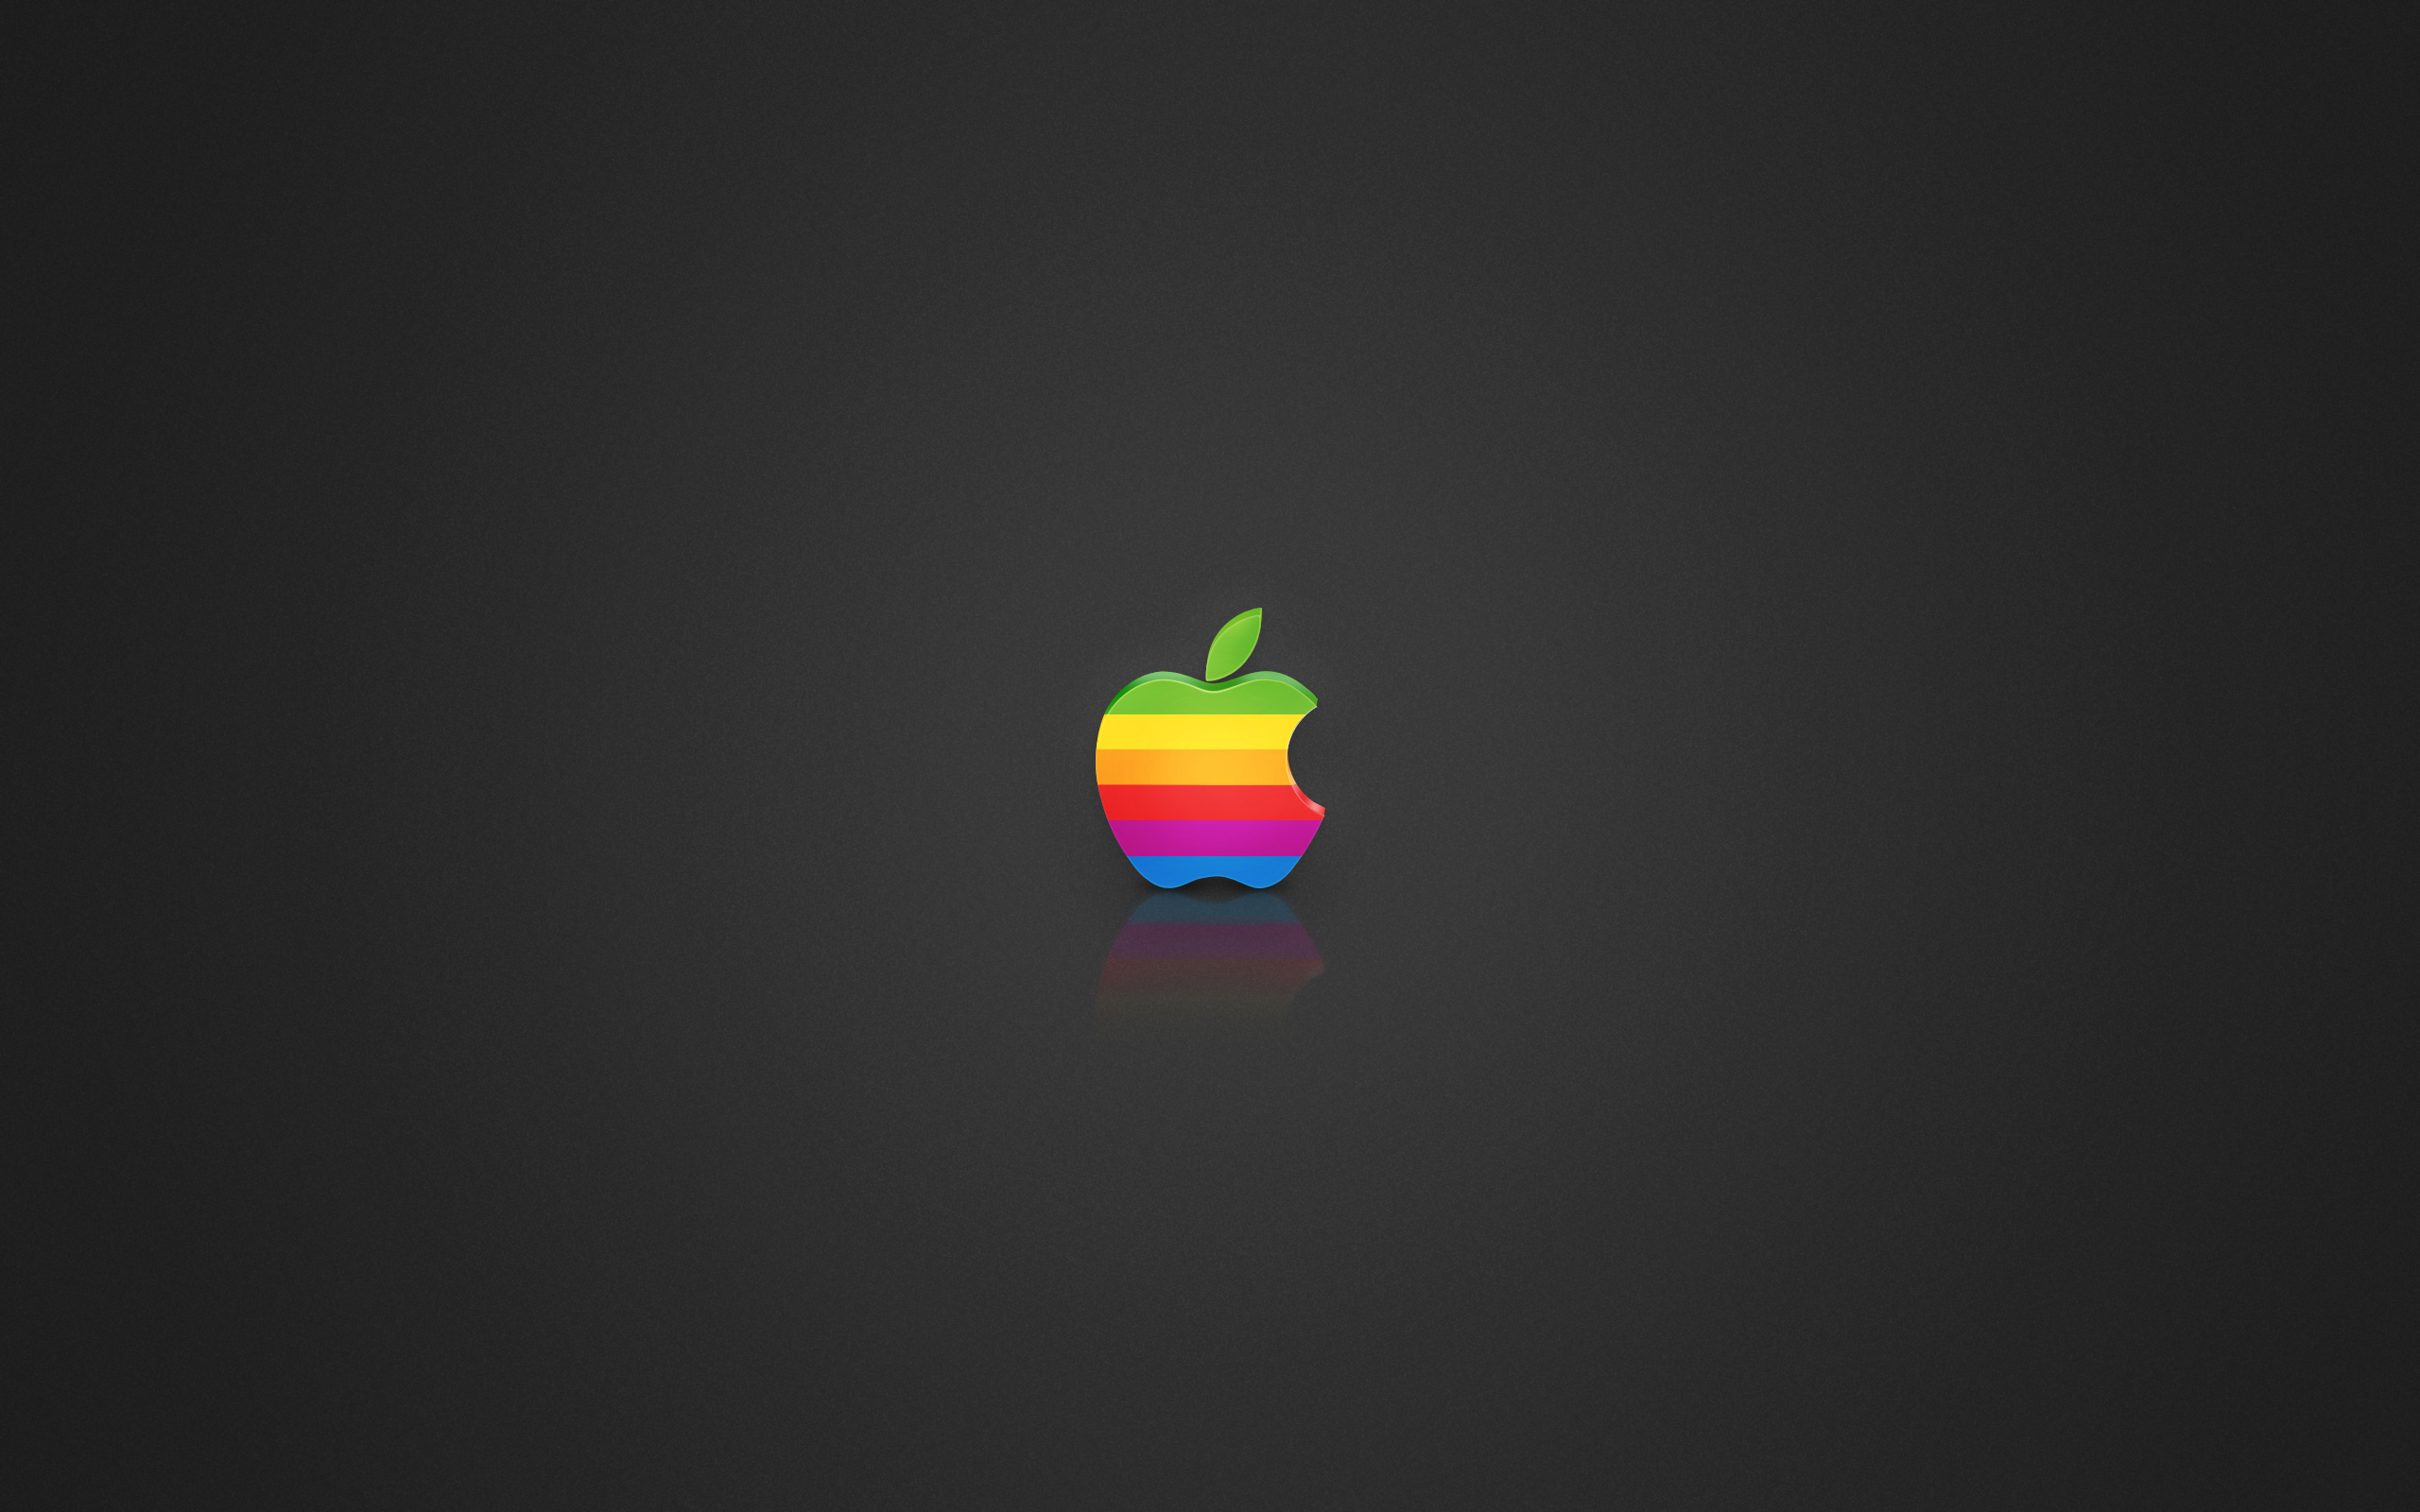 Coloured Apple Logo Wallpaper Stock Photos